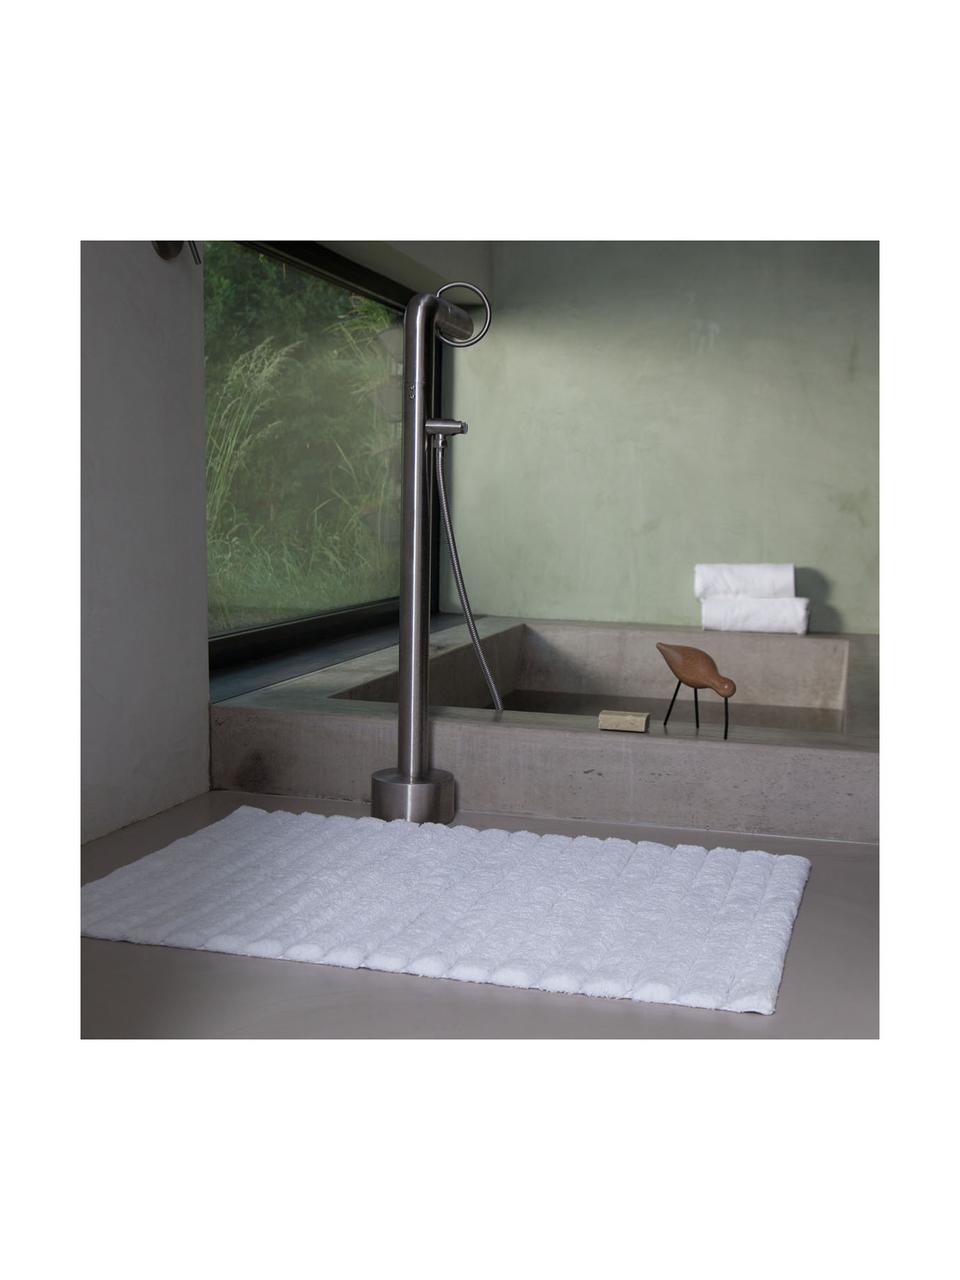 Tappeto bagno morbido bianco Board, 100% cotone, qualità pesante, 1900 g/m², Bianco, Larg. 50 x Lung. 60 cm